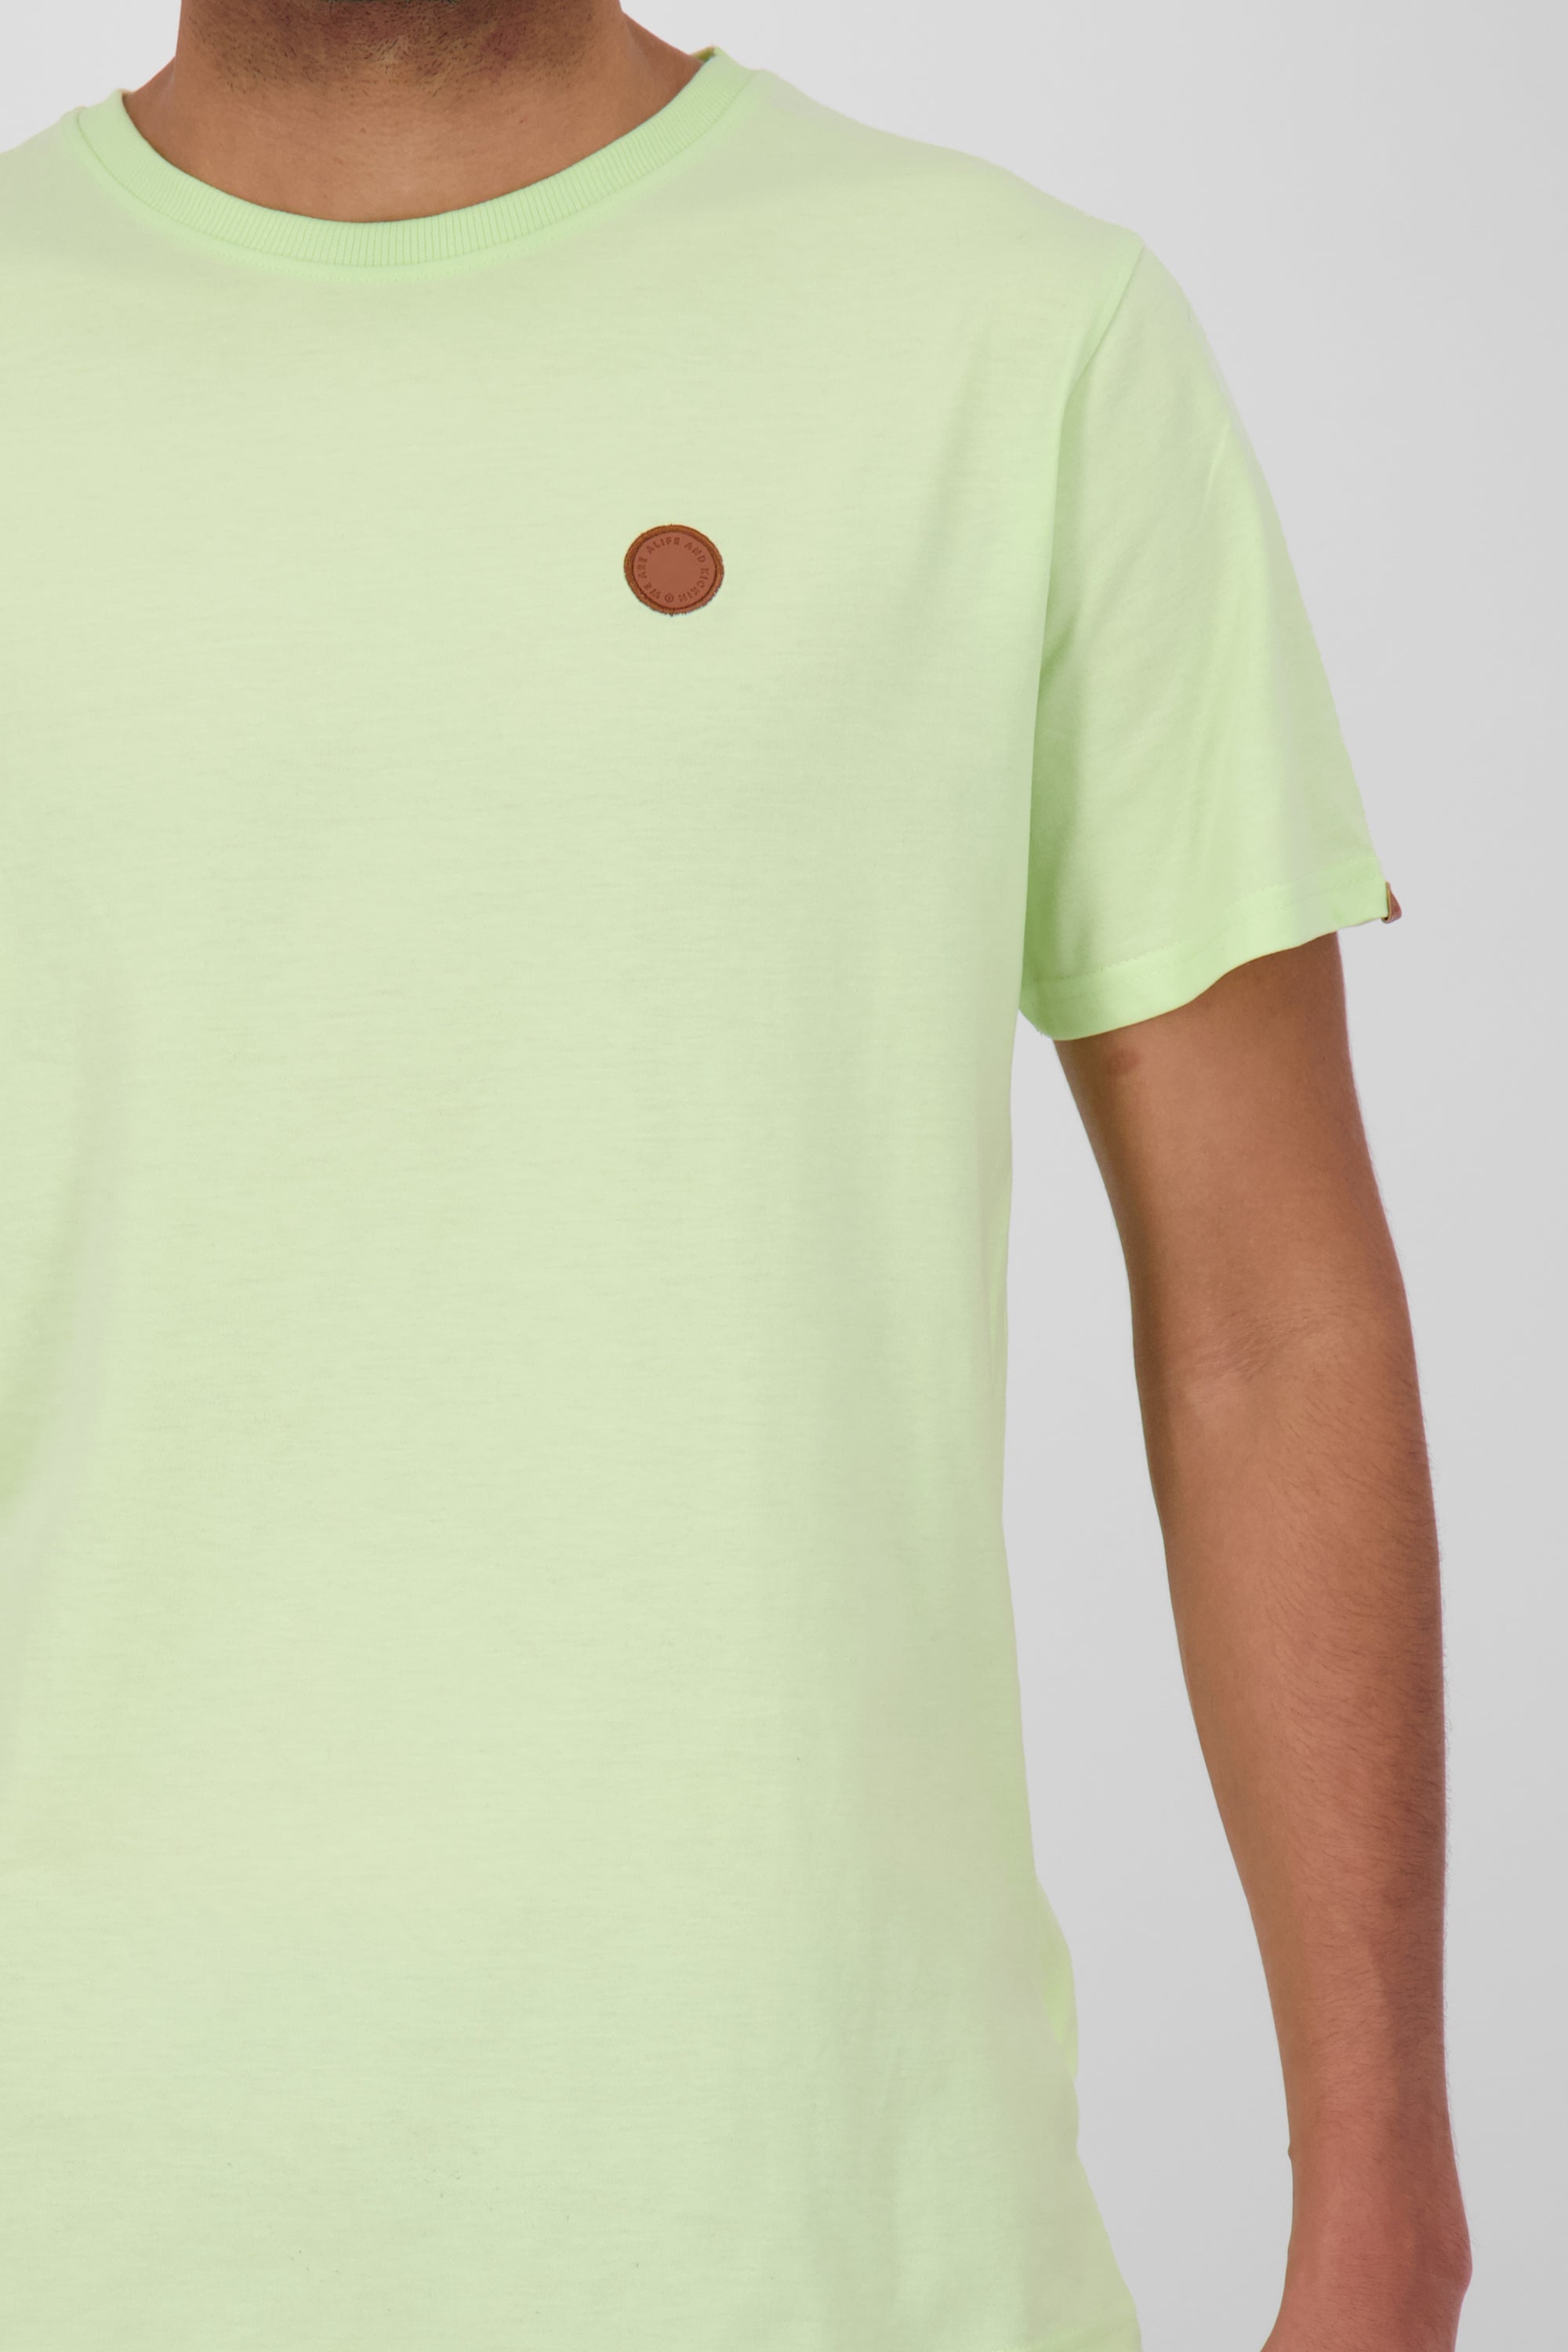 Herren T-Shirt MaddoxAK Hochwertig und vielseitig Hellgrün